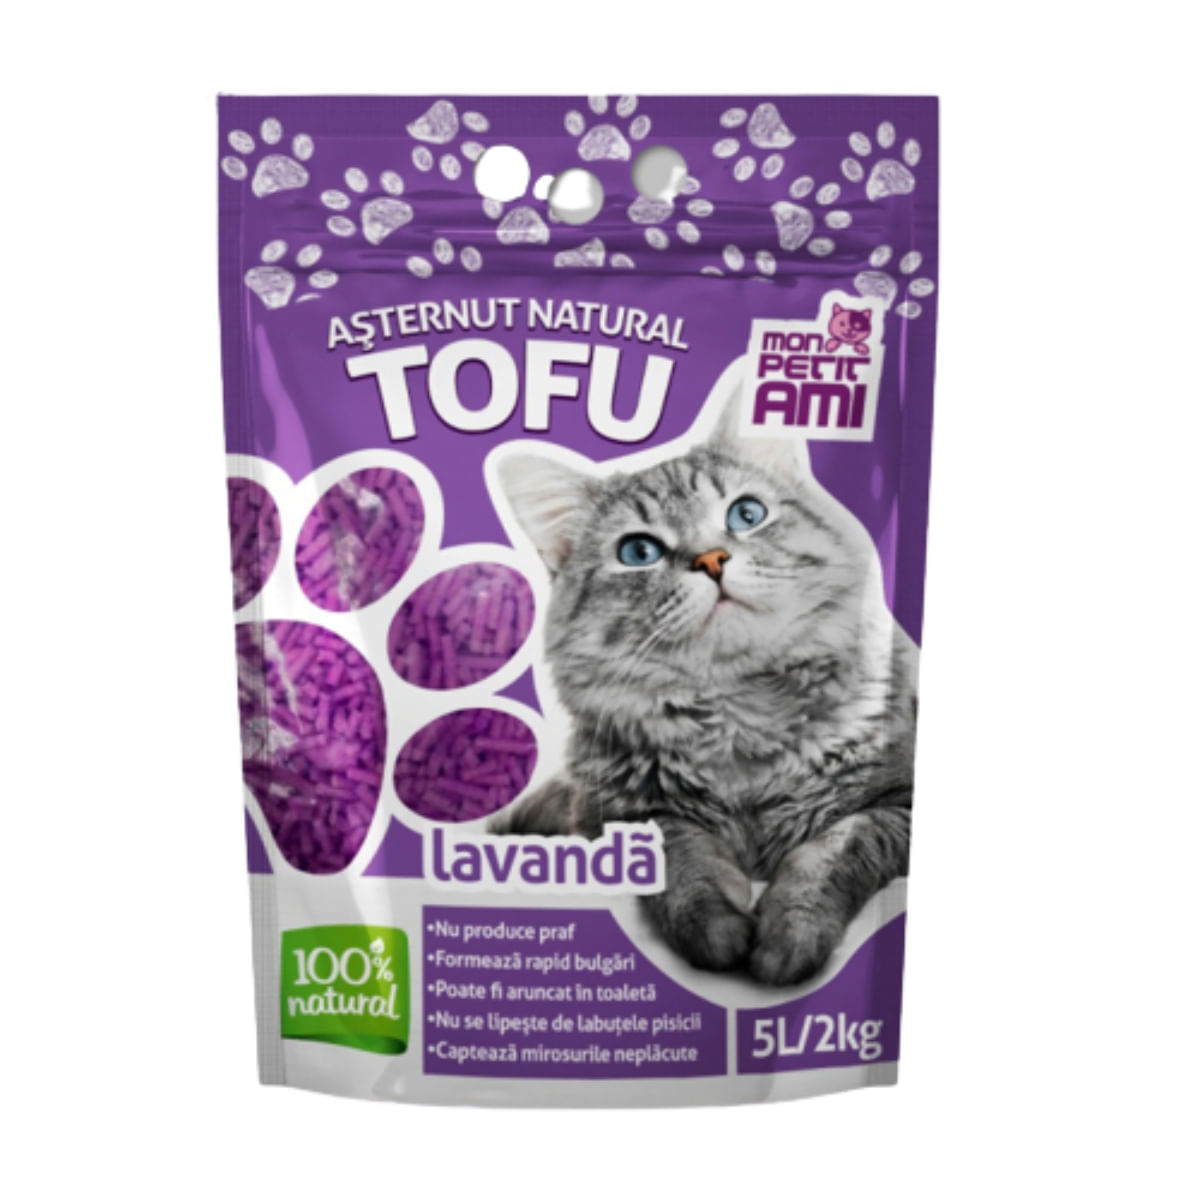 MON PETIT AMI Tofu, Lavanda, așternut igienic pisici, peleți, tofu, aglomerant, neutralizare mirosuri, biodegradabil, 5l